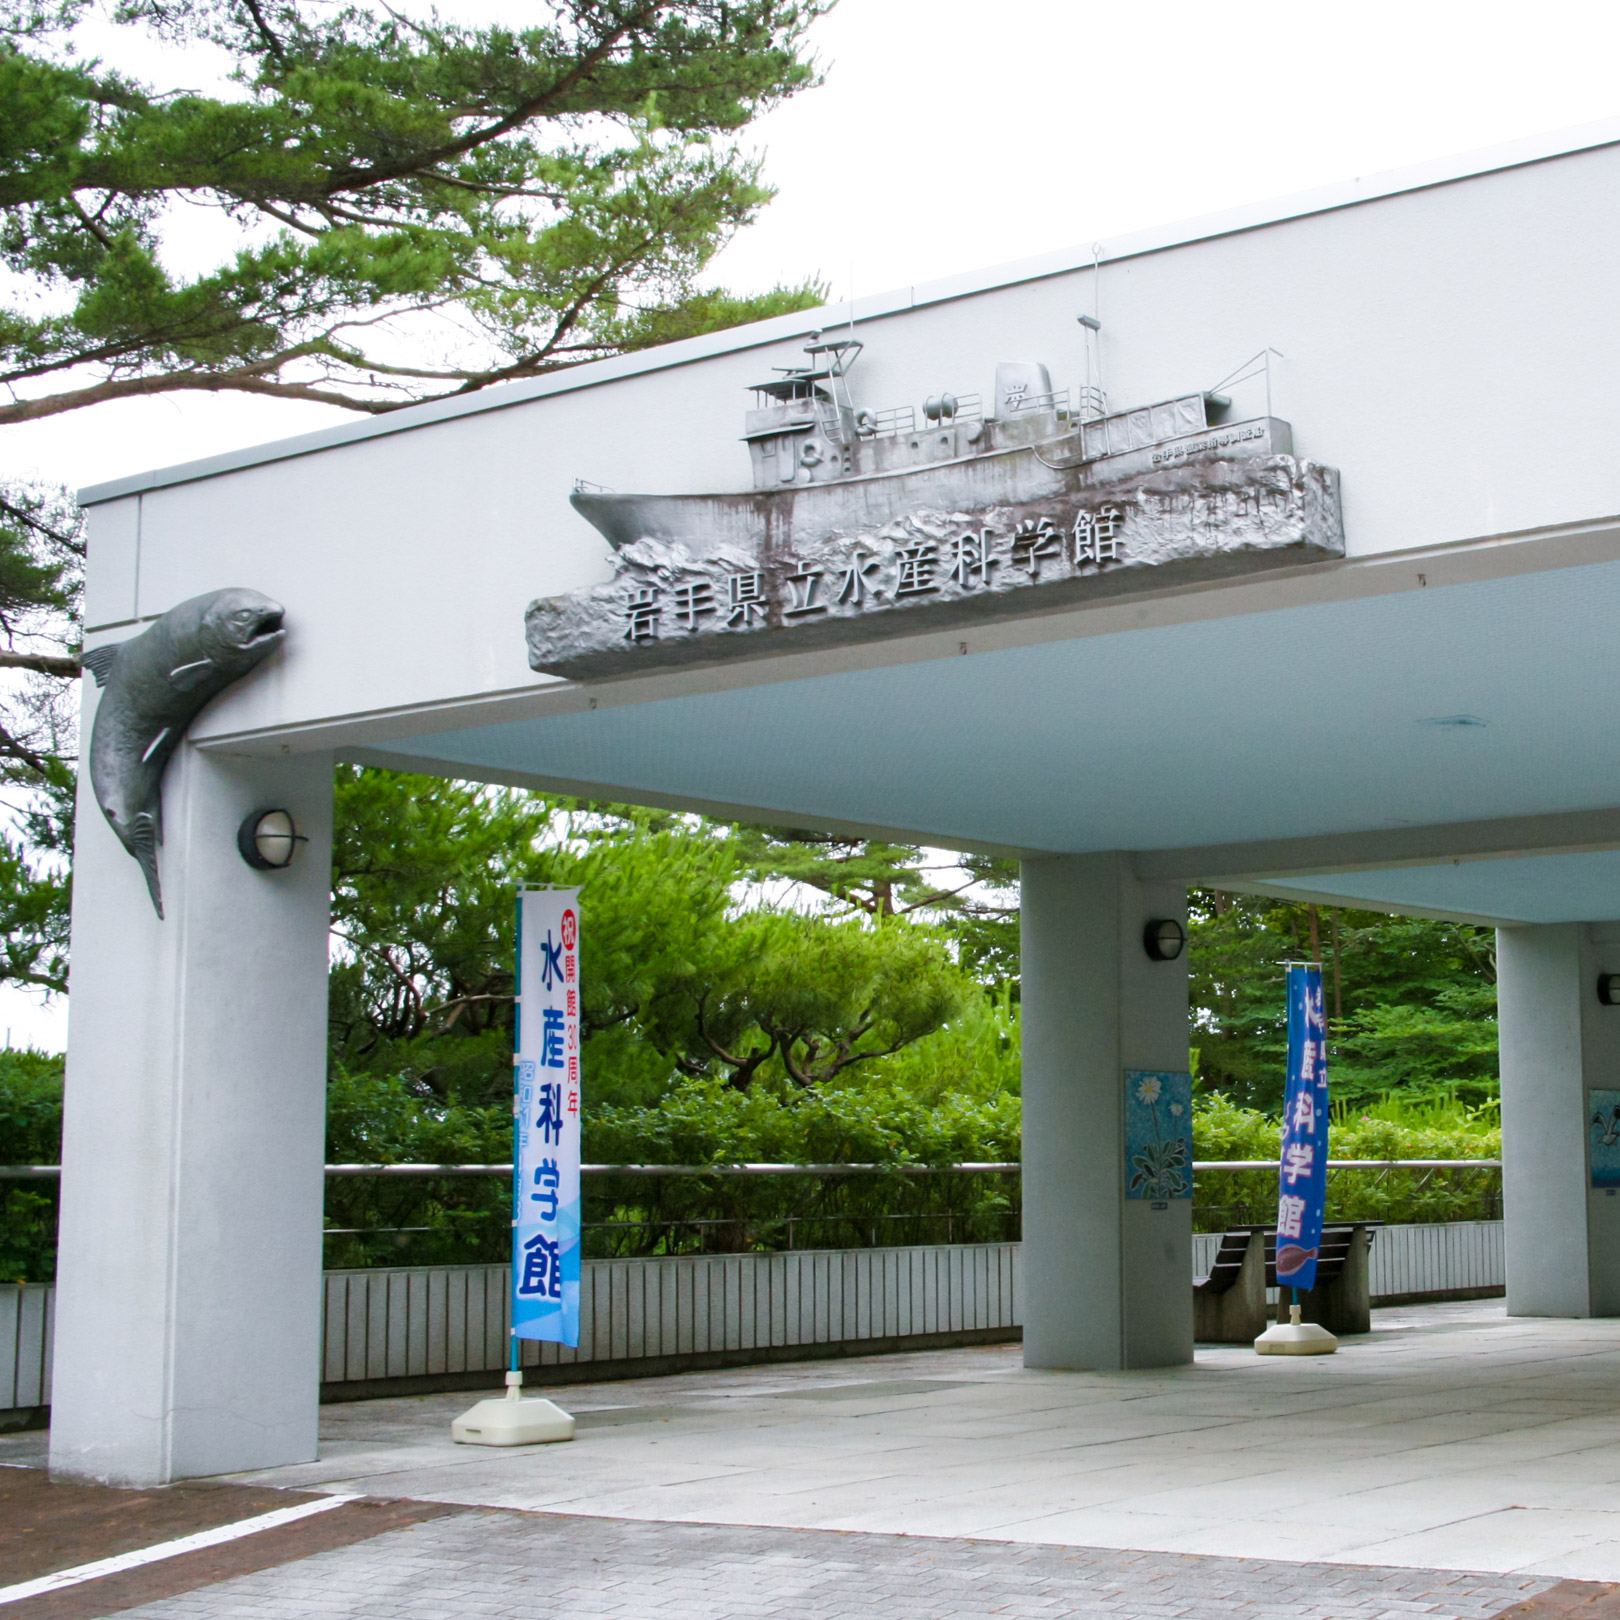 ホテルのすぐ近くにある岩手県立水産科学館。